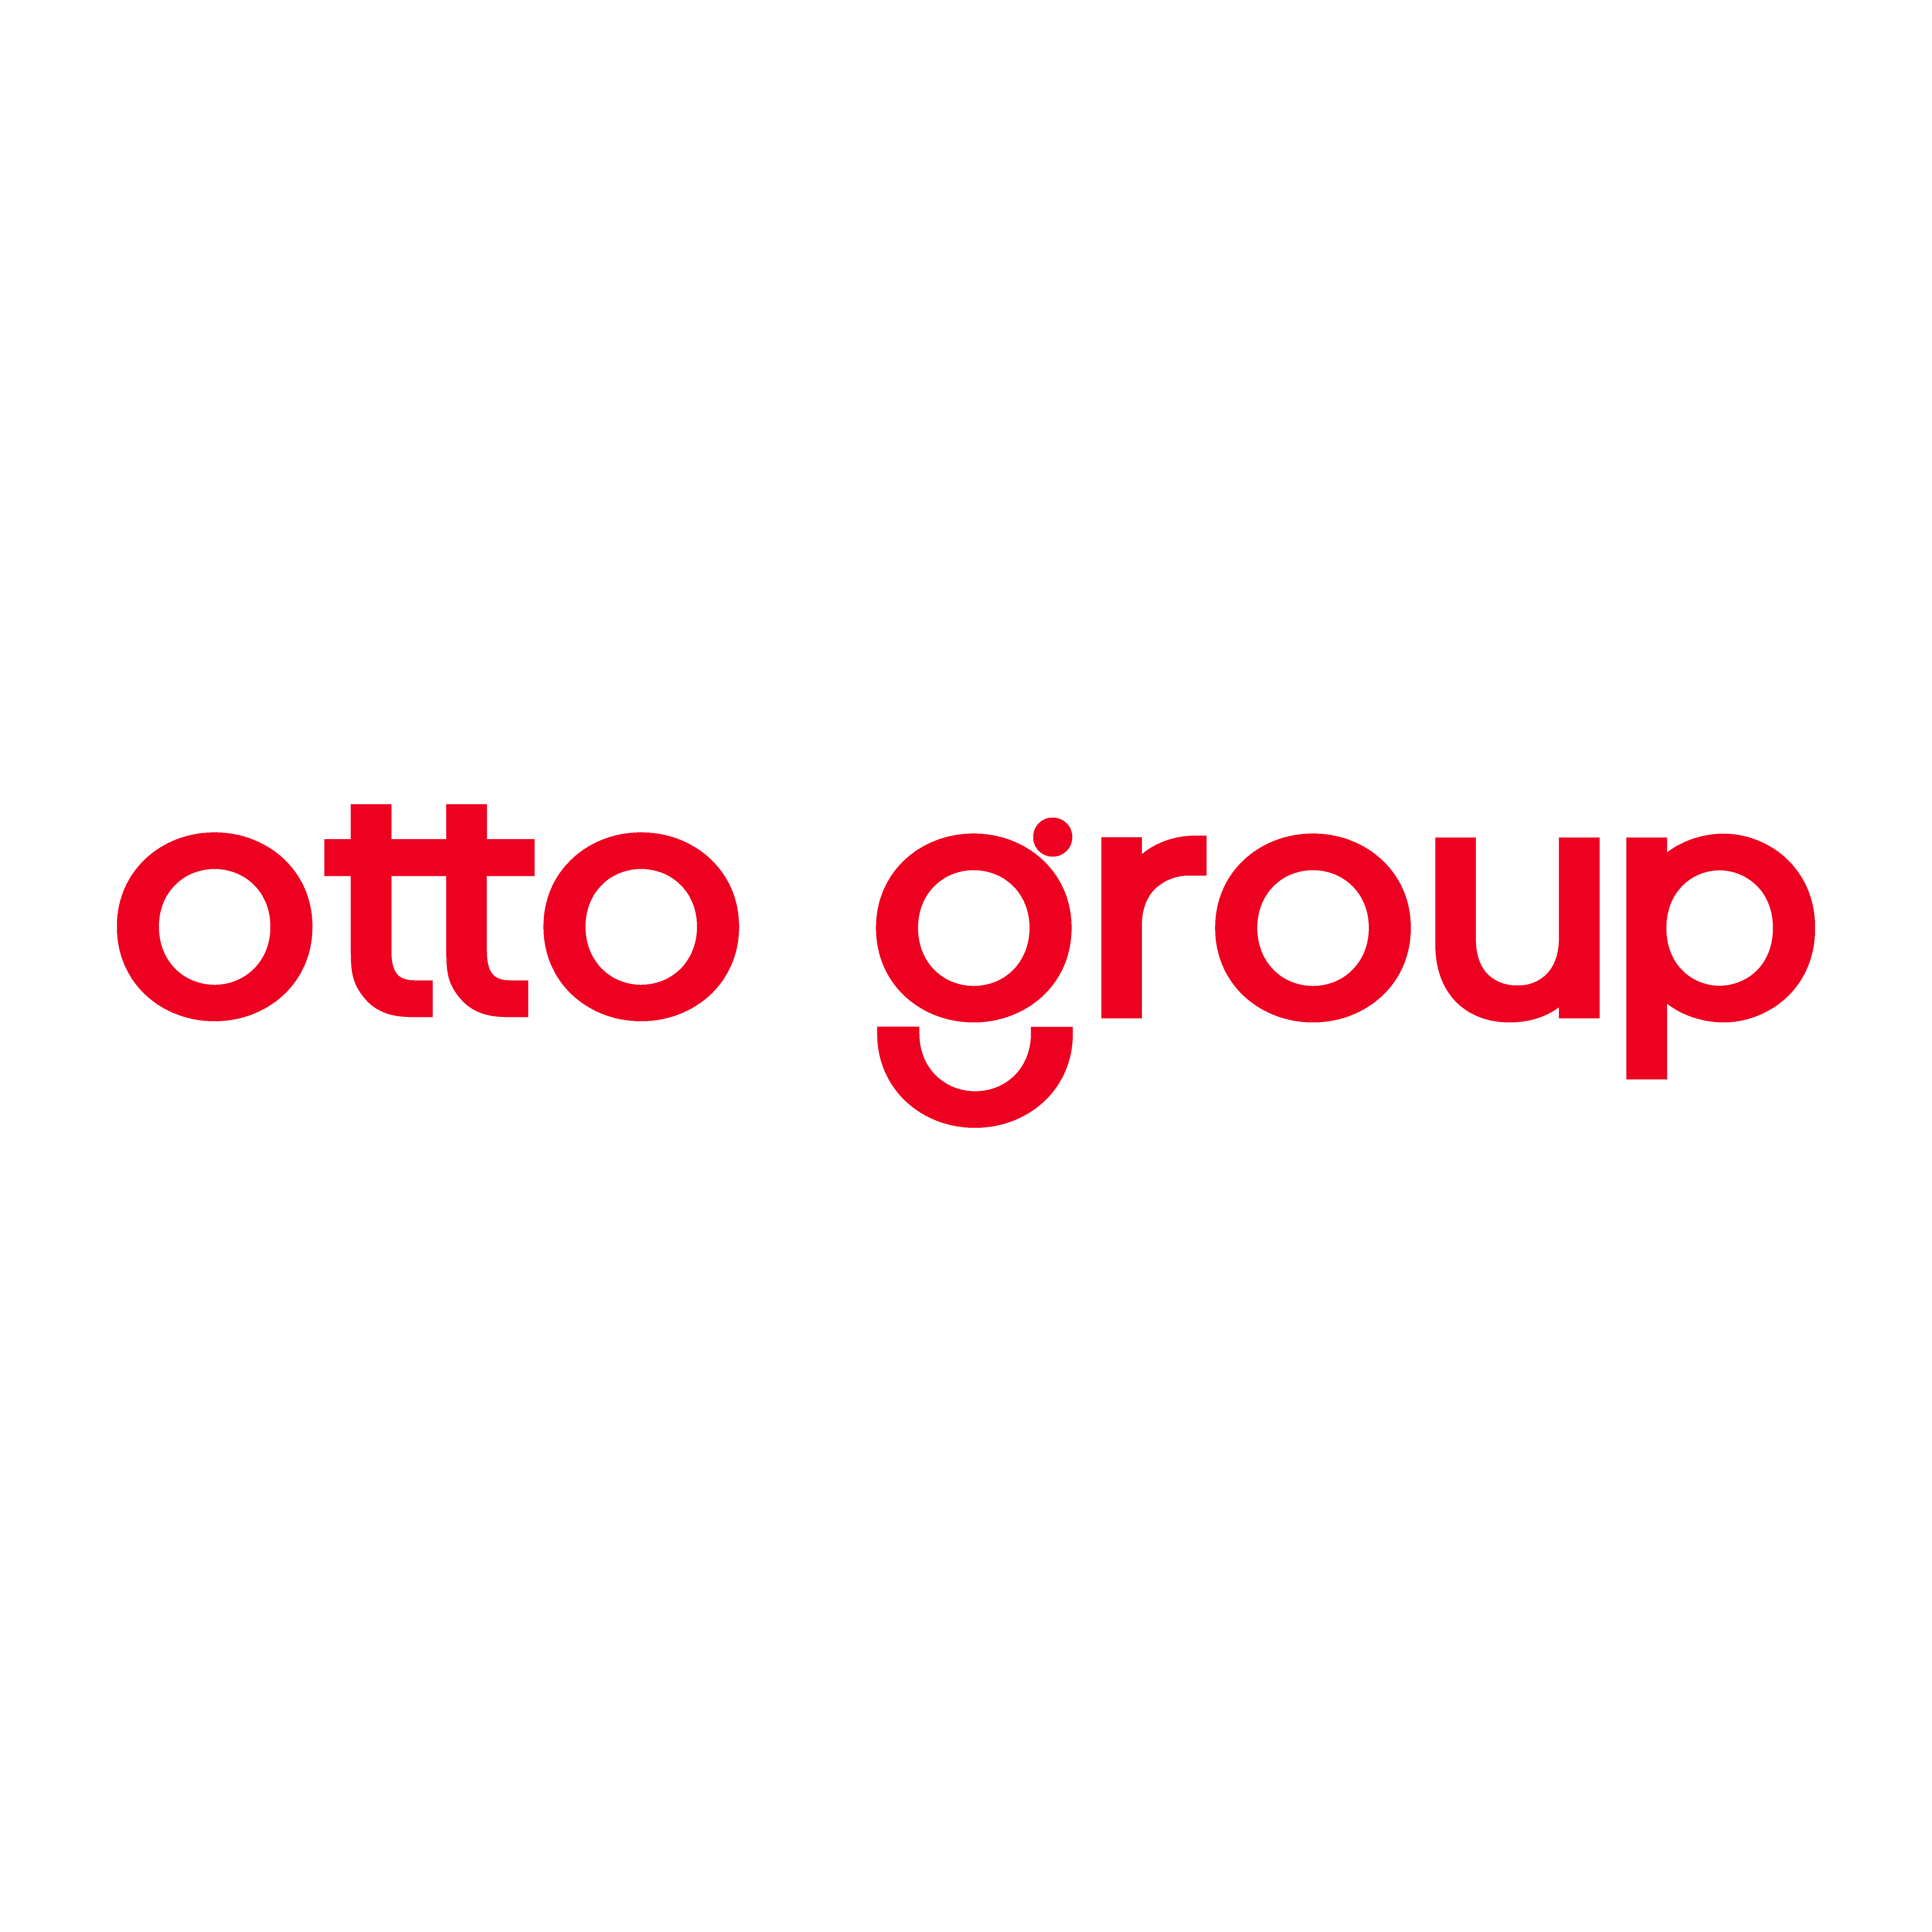 brasão otto group